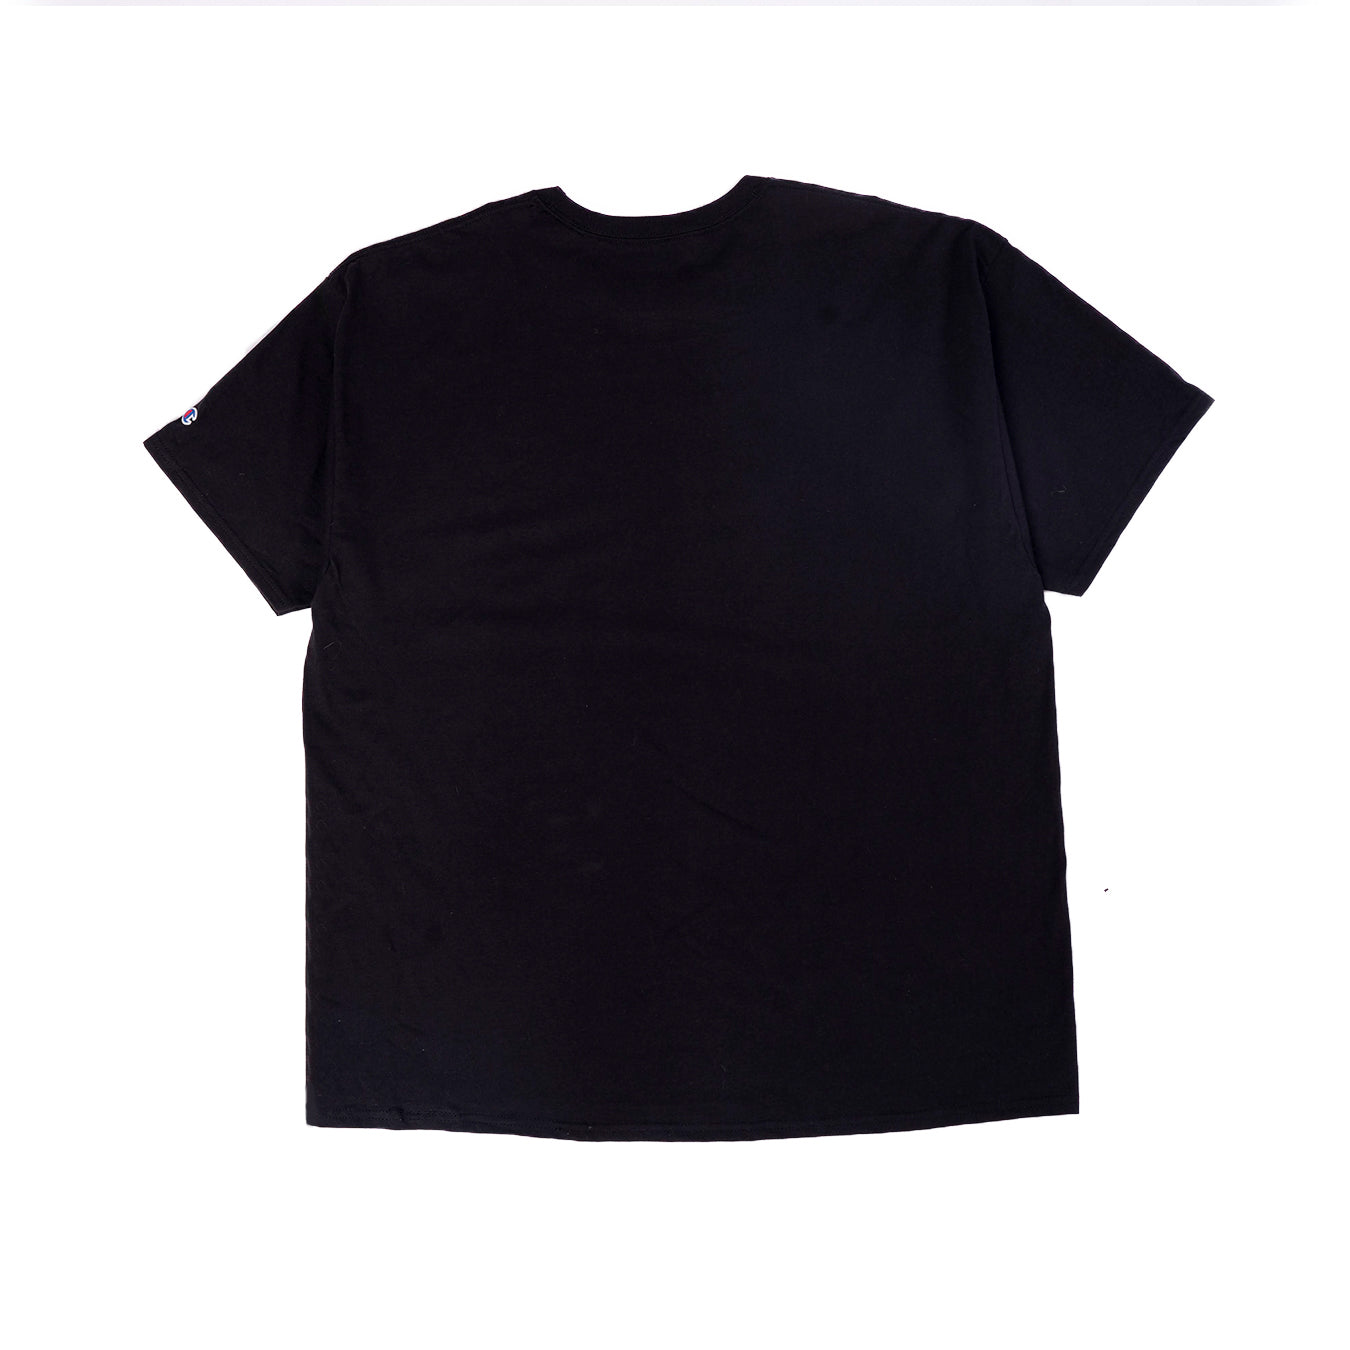 Louis Vuitton X Virgil Abloh T-shirt Size 4L Biggest Size